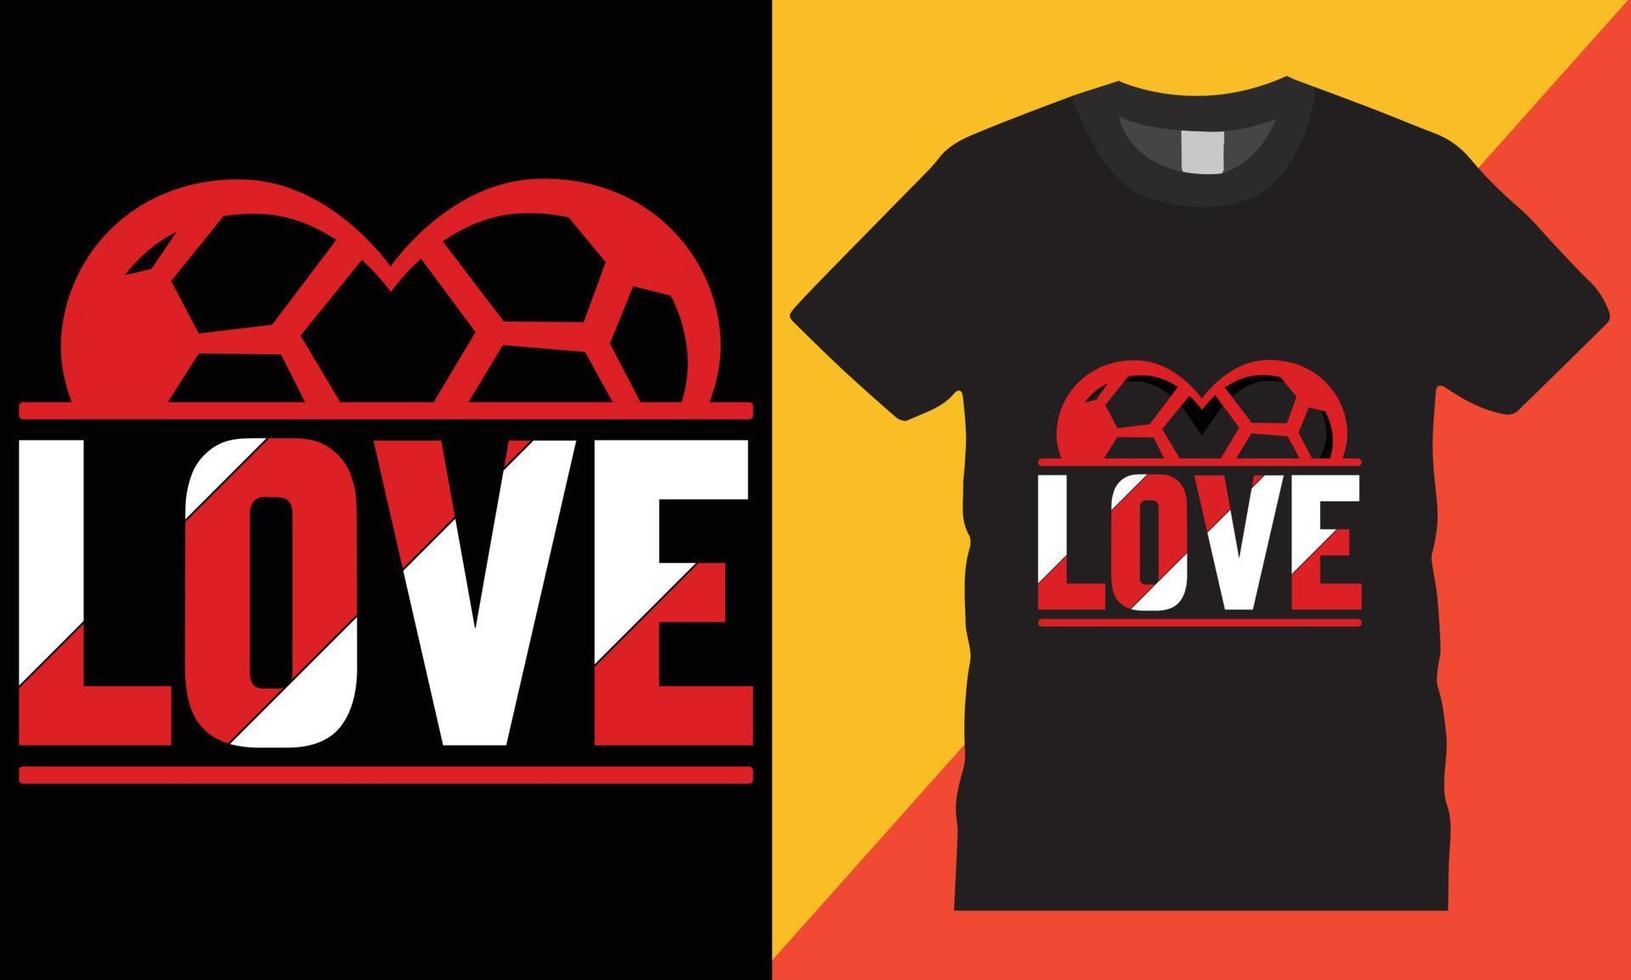 Typografie Fußball kreativ T-Shirt Design Vektor